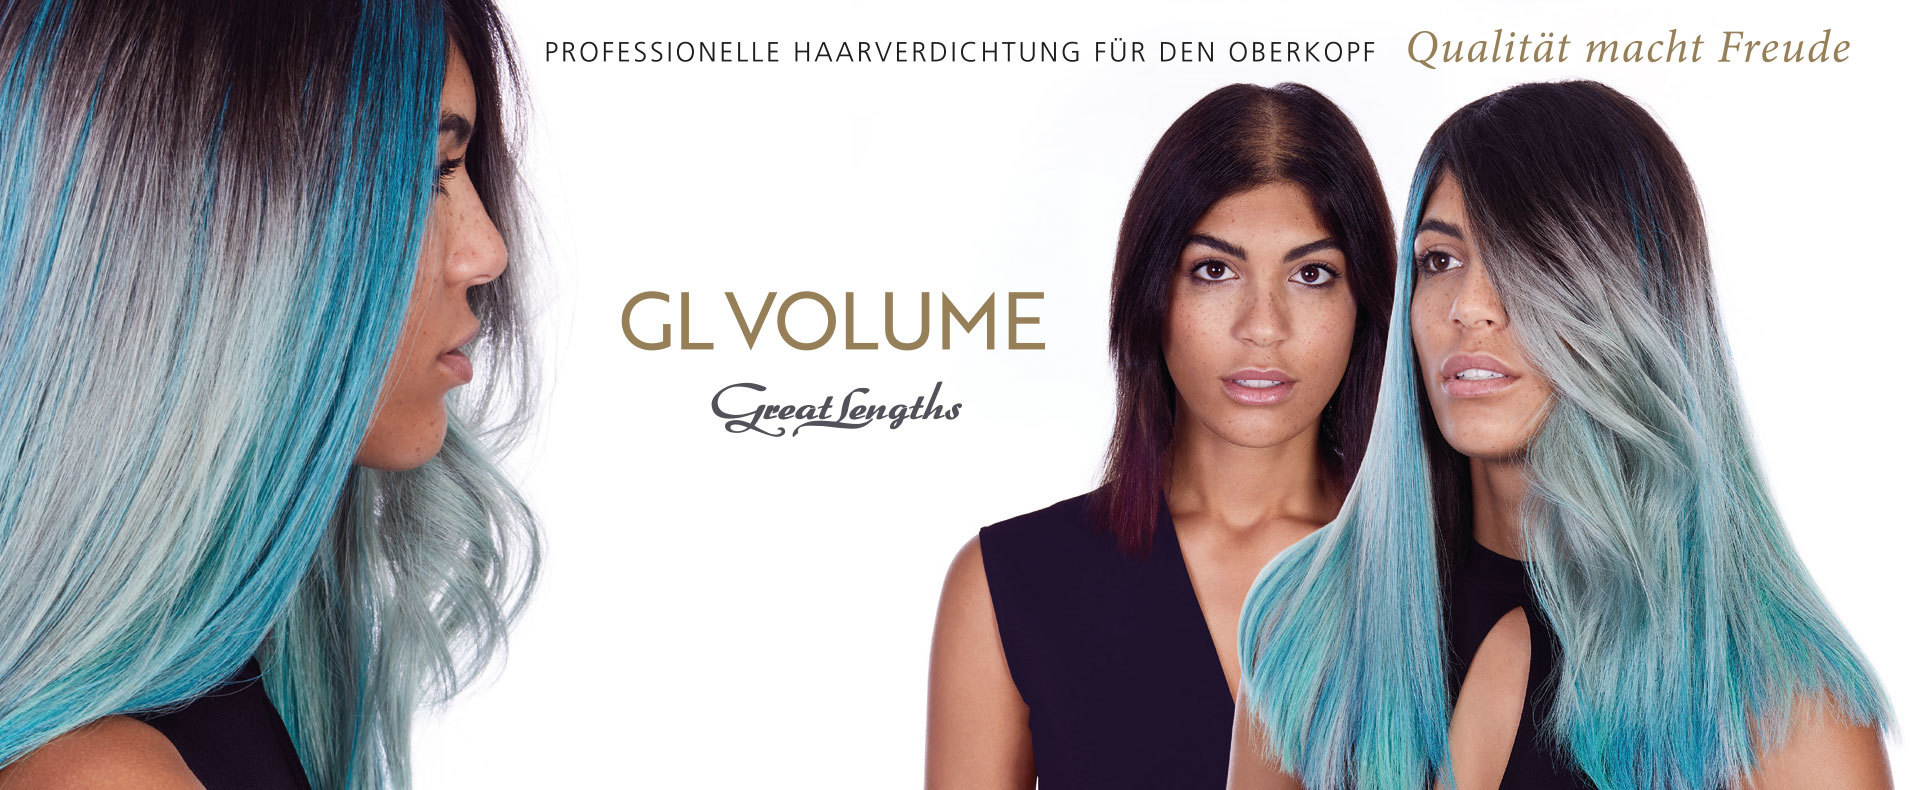 GL Volume, perfektes Ergebnis, ein neues Haargefühl ist entstanden (© Great Lengths)